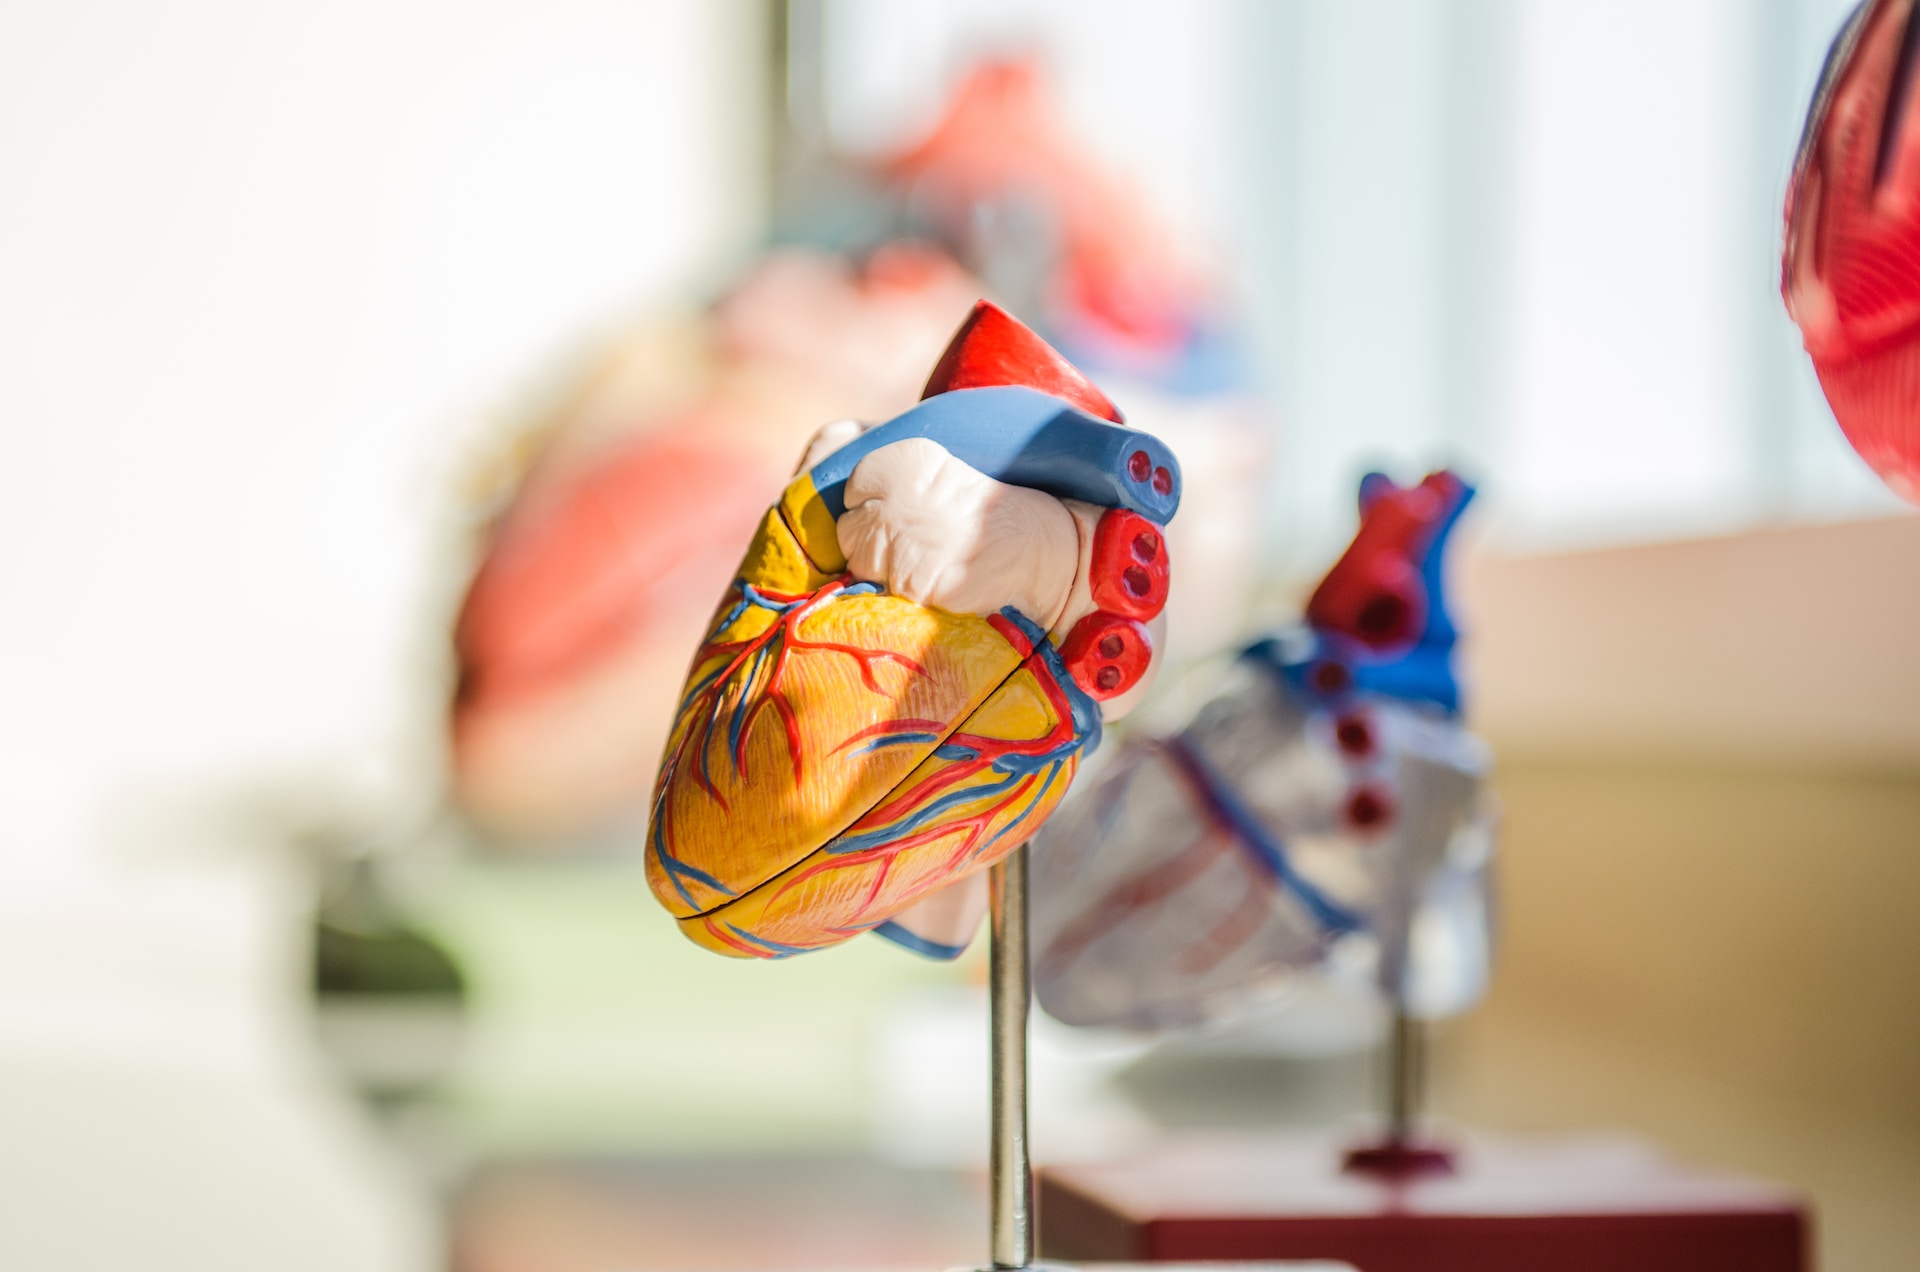 Τα άτομα με συγγενείς καρδιοπάθειες ανησυχούν ότι είναι υπογόνιμα, αλλά αυτό δε φαίνεται να ισχύει  